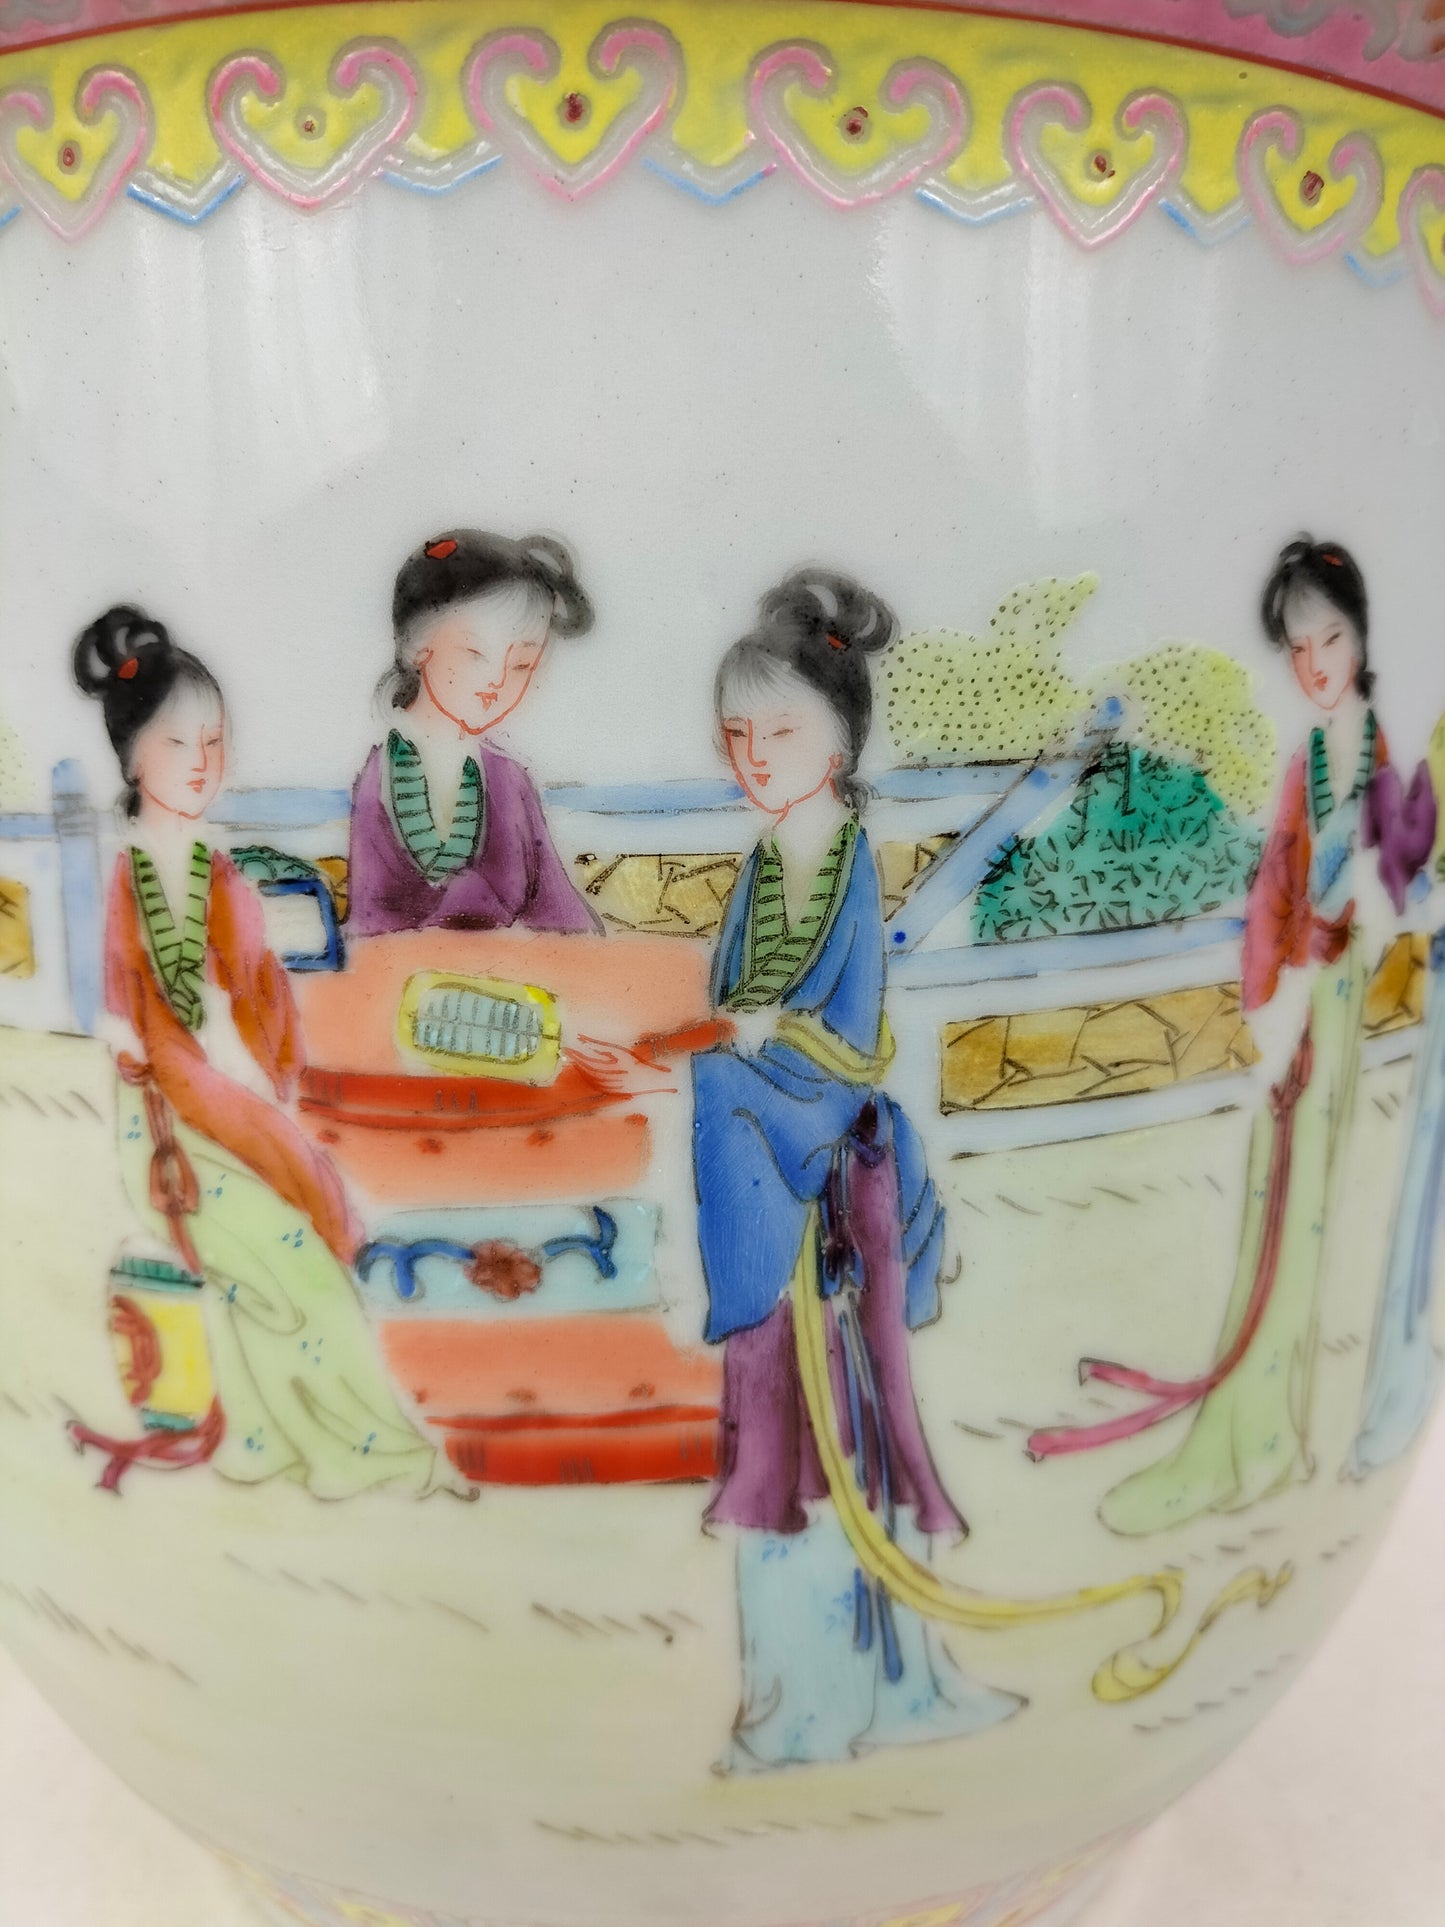 花园场景装饰的中国粉彩花盆 // 景德镇 - 20 世纪